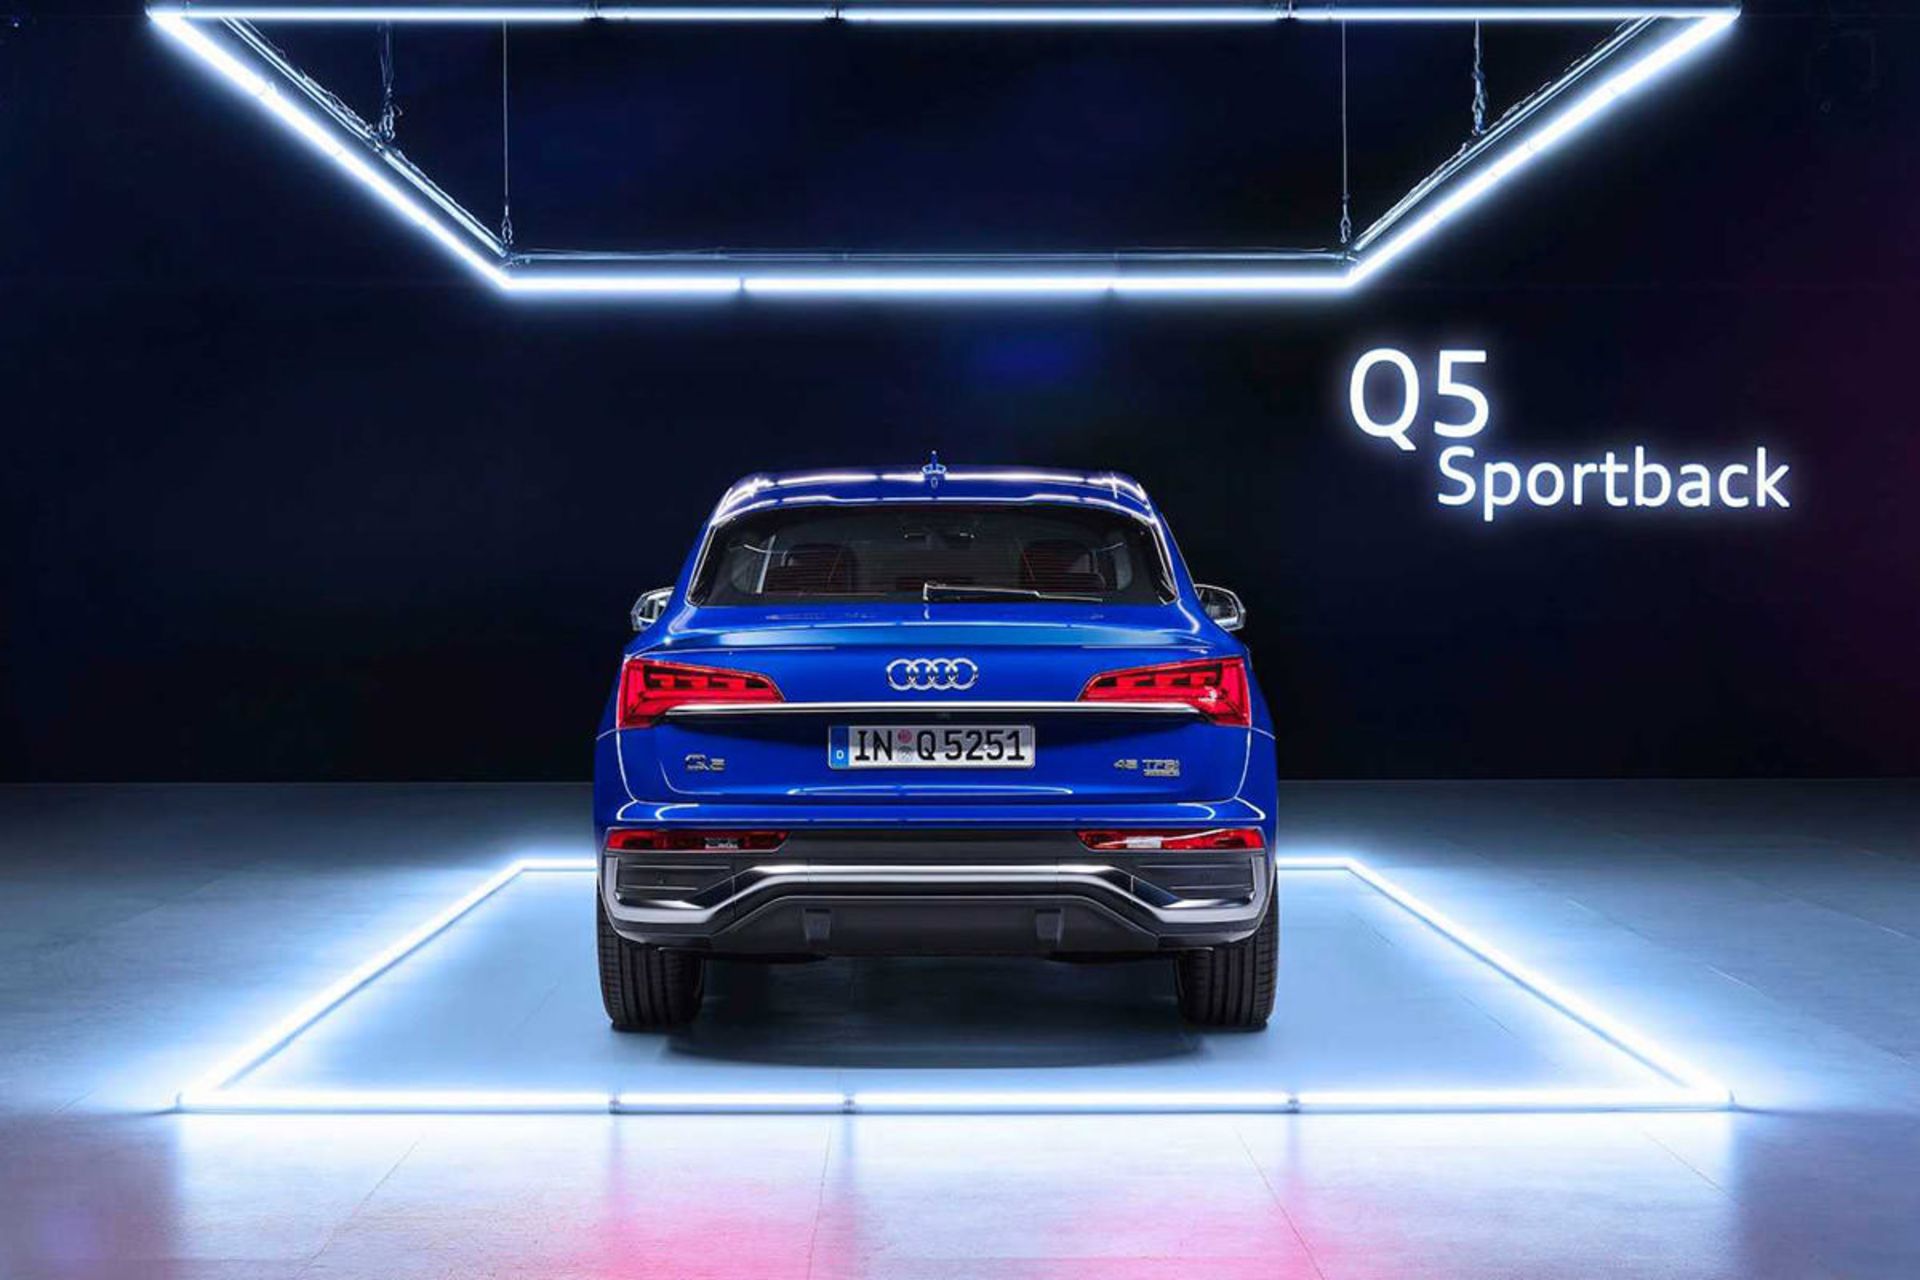 مرجع متخصصين ايران نماي عقب كراس اور آئودي كيو 5 اسپرت بك / 2021 Audi Q5 Sportback آبي رنگ